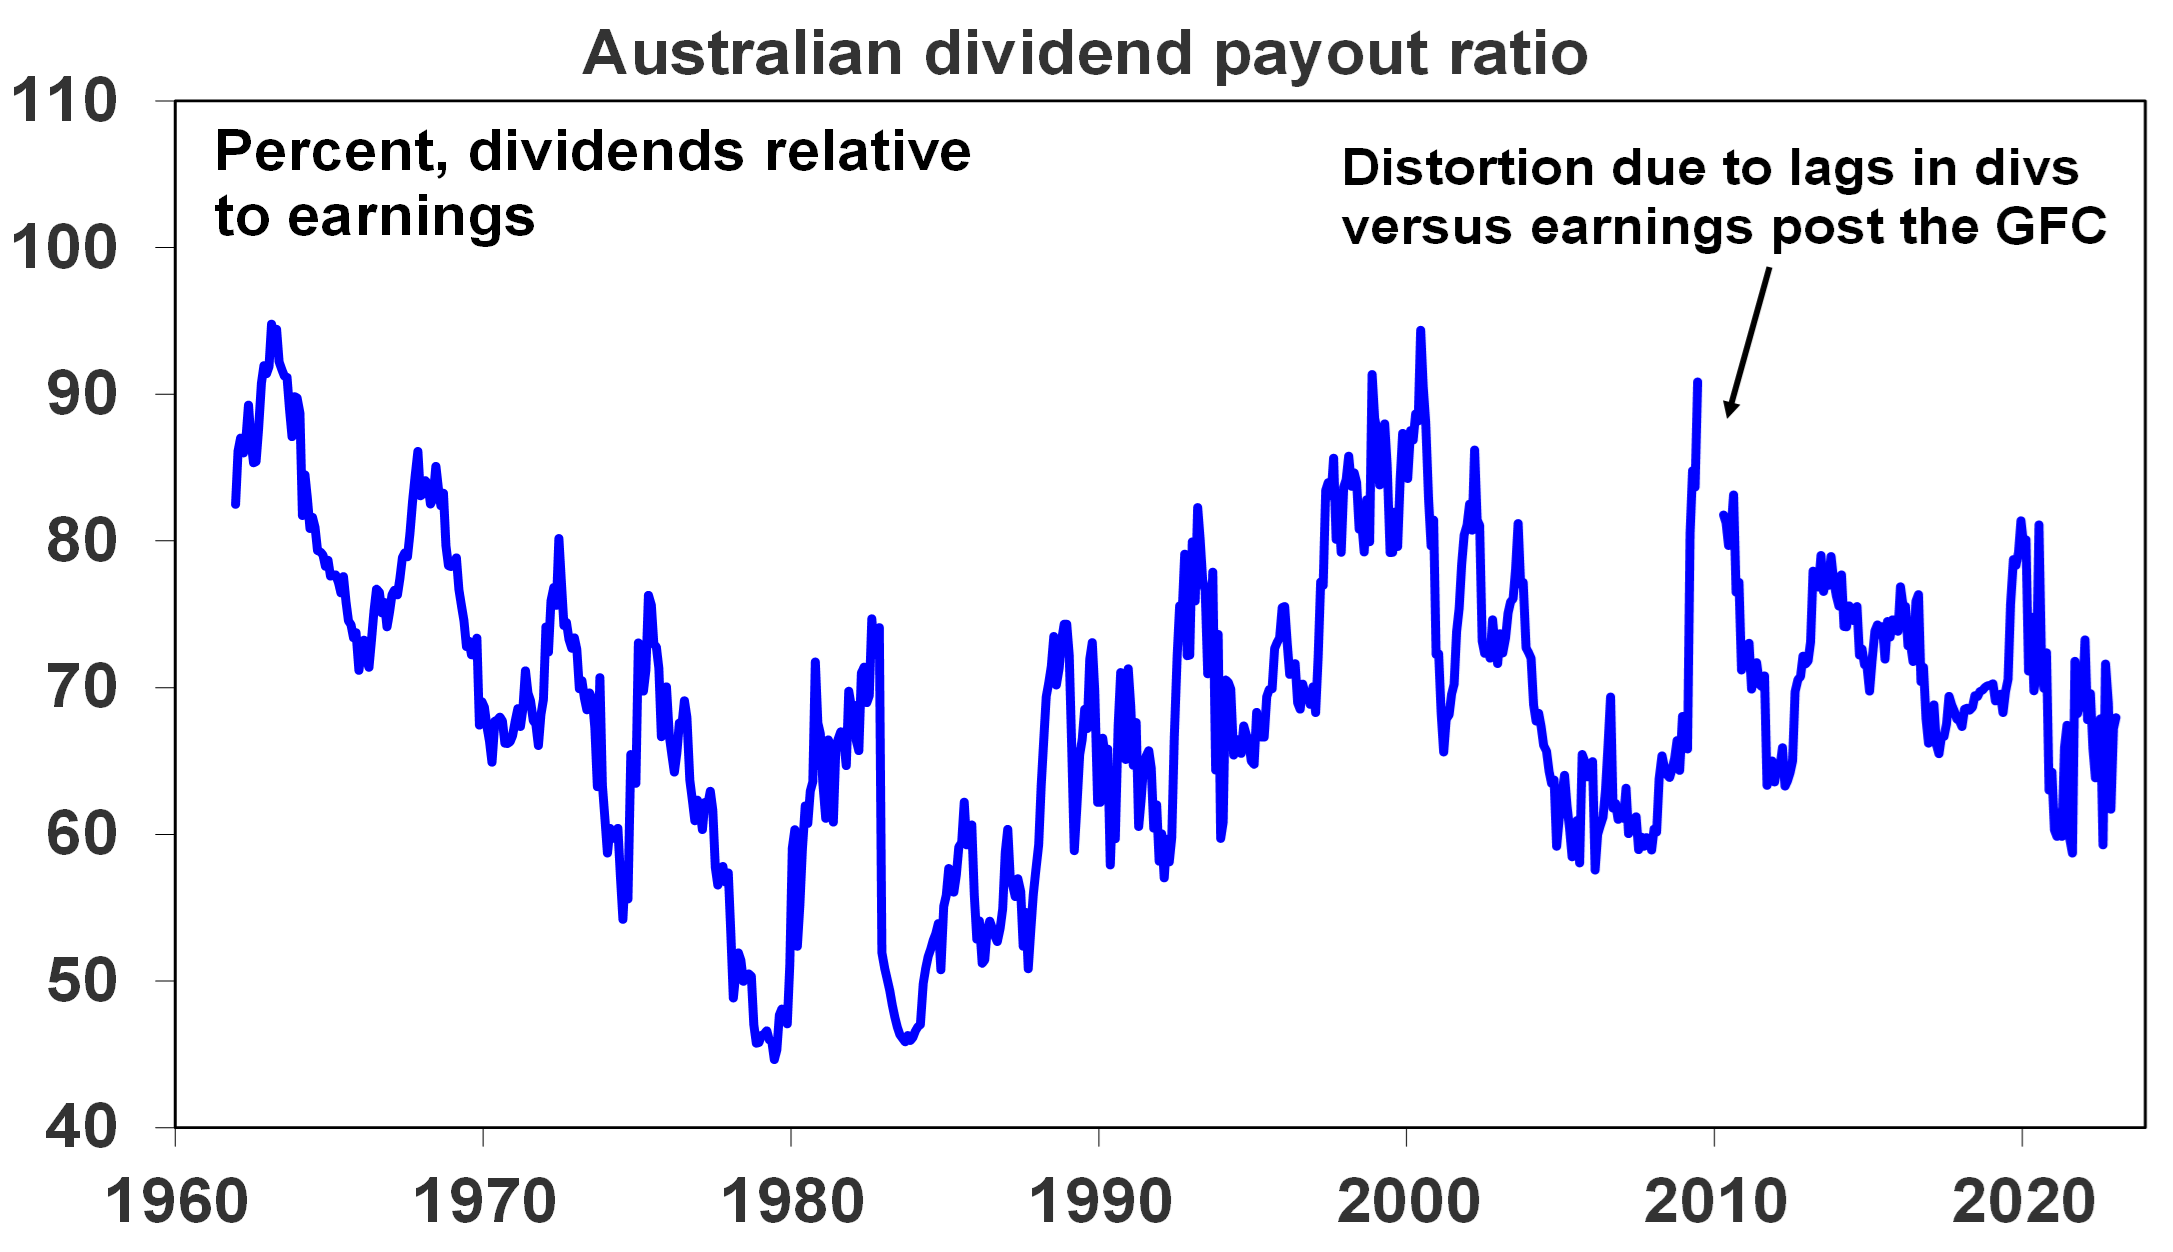 Aust dividend payout ratio